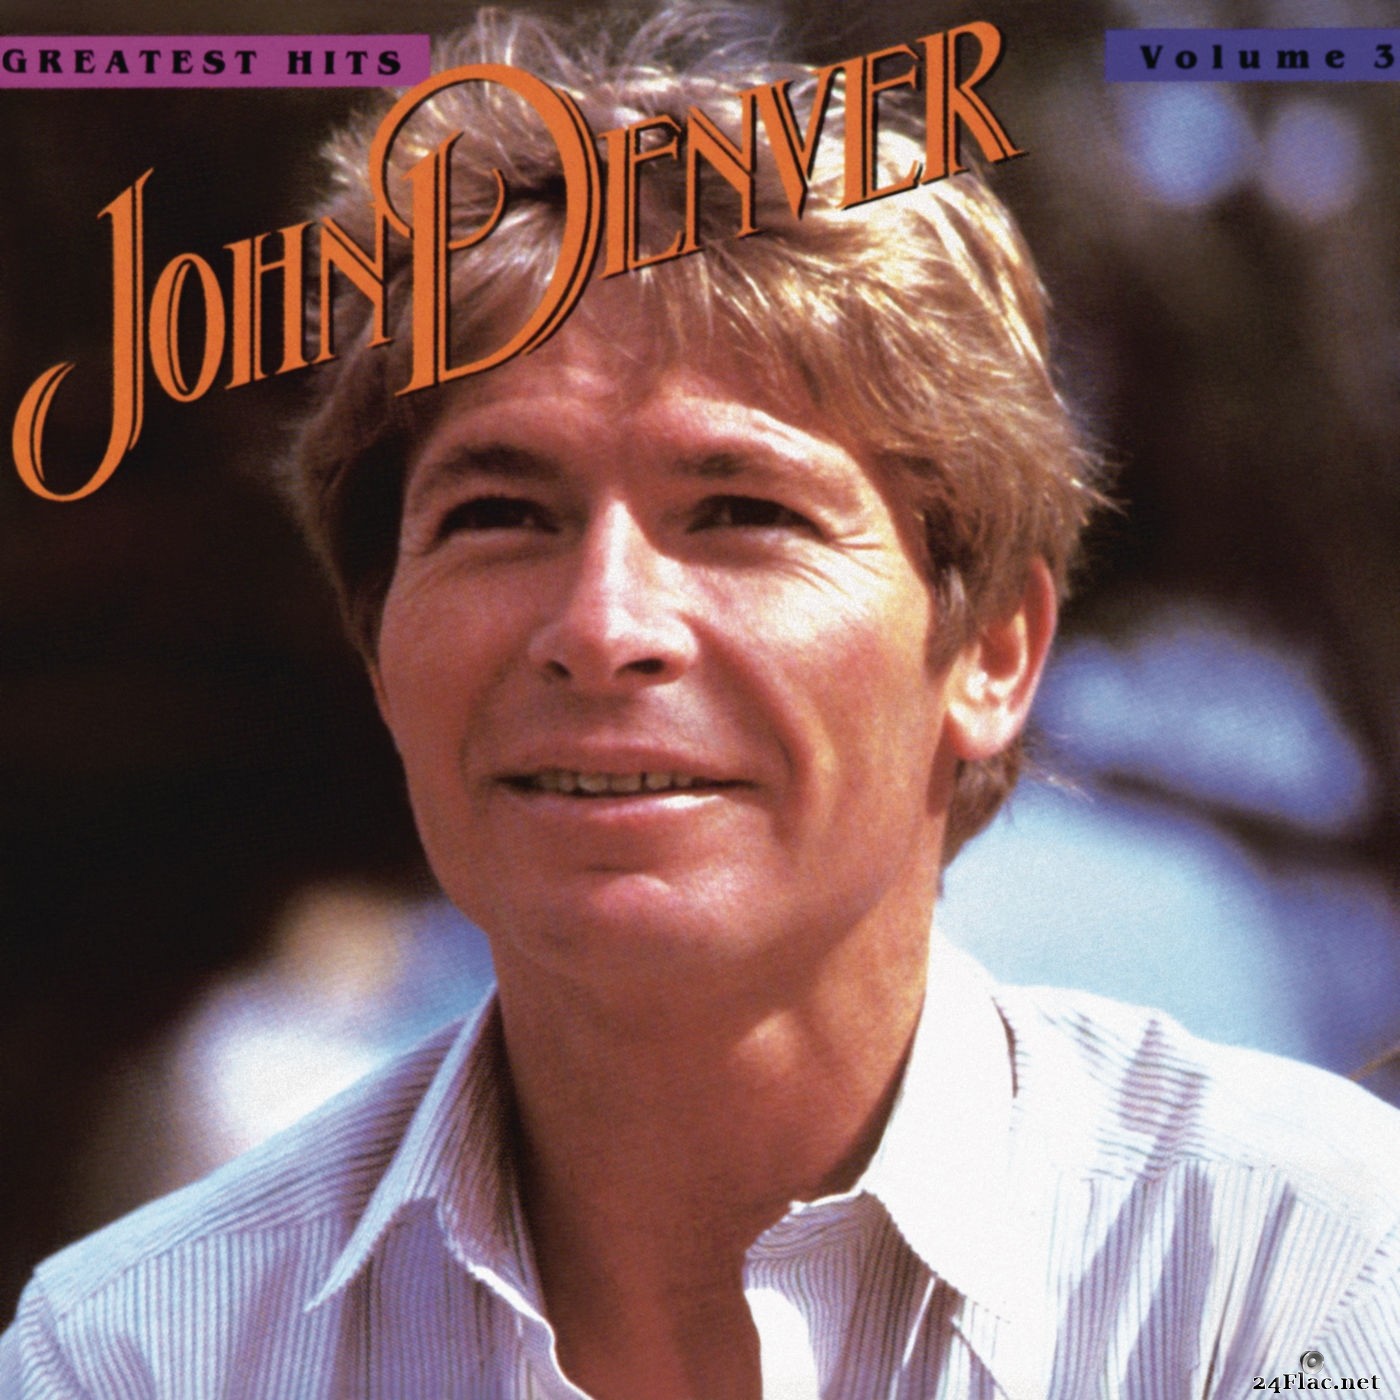 John Denver - John Denver's Greatest Hits, Volume 3 (2019) Hi-Res